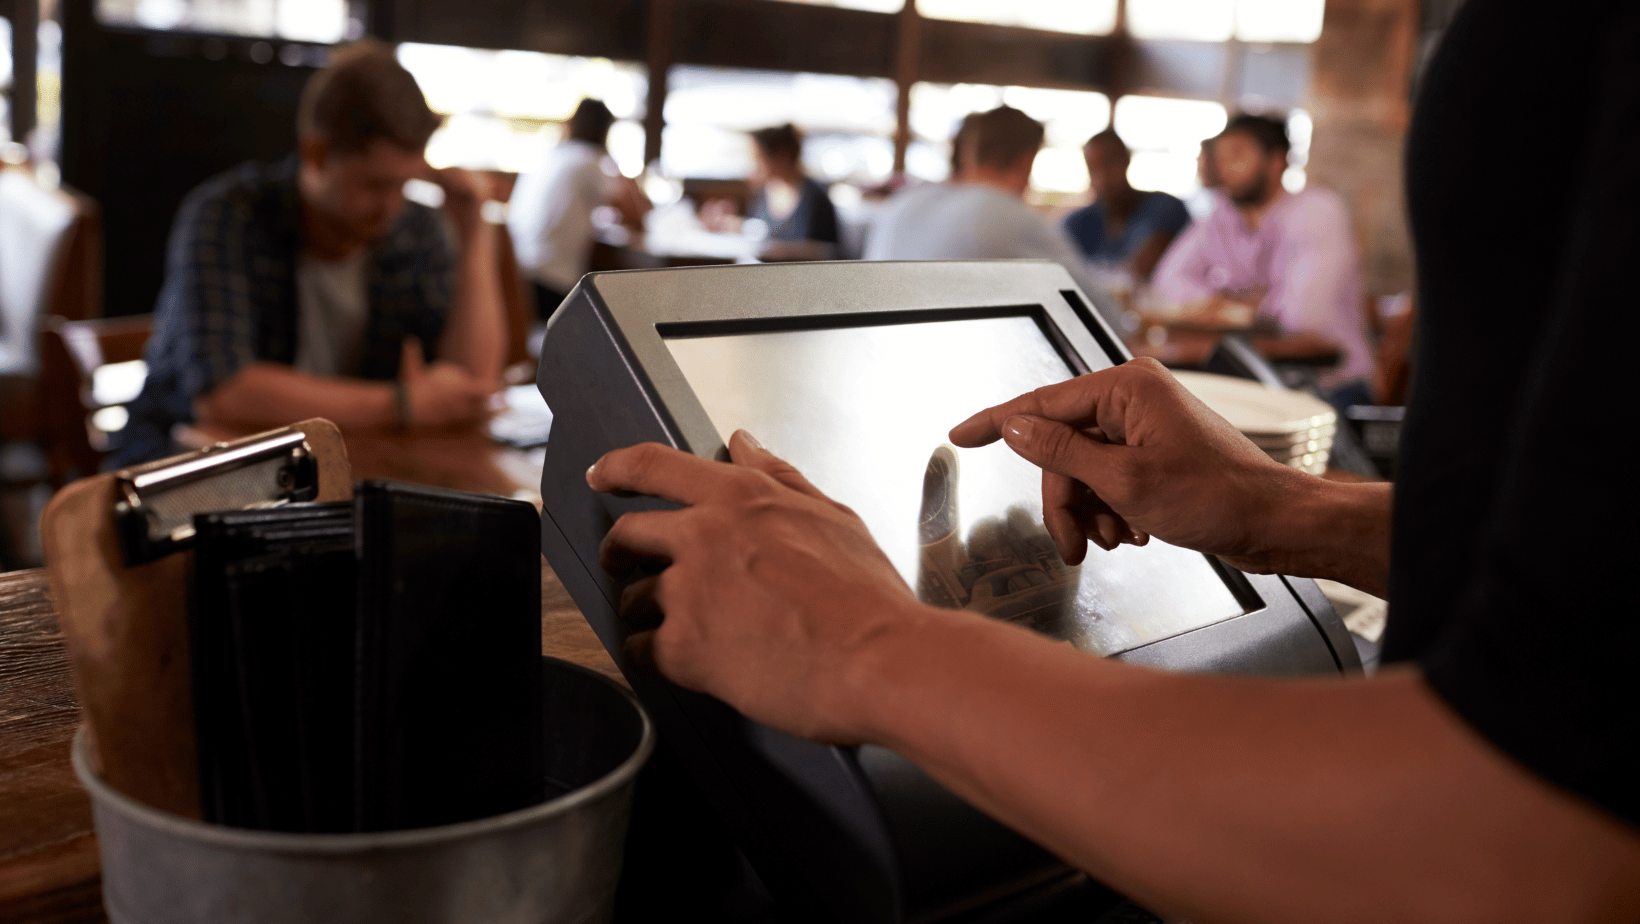 Touch screen till technology in restaurant 